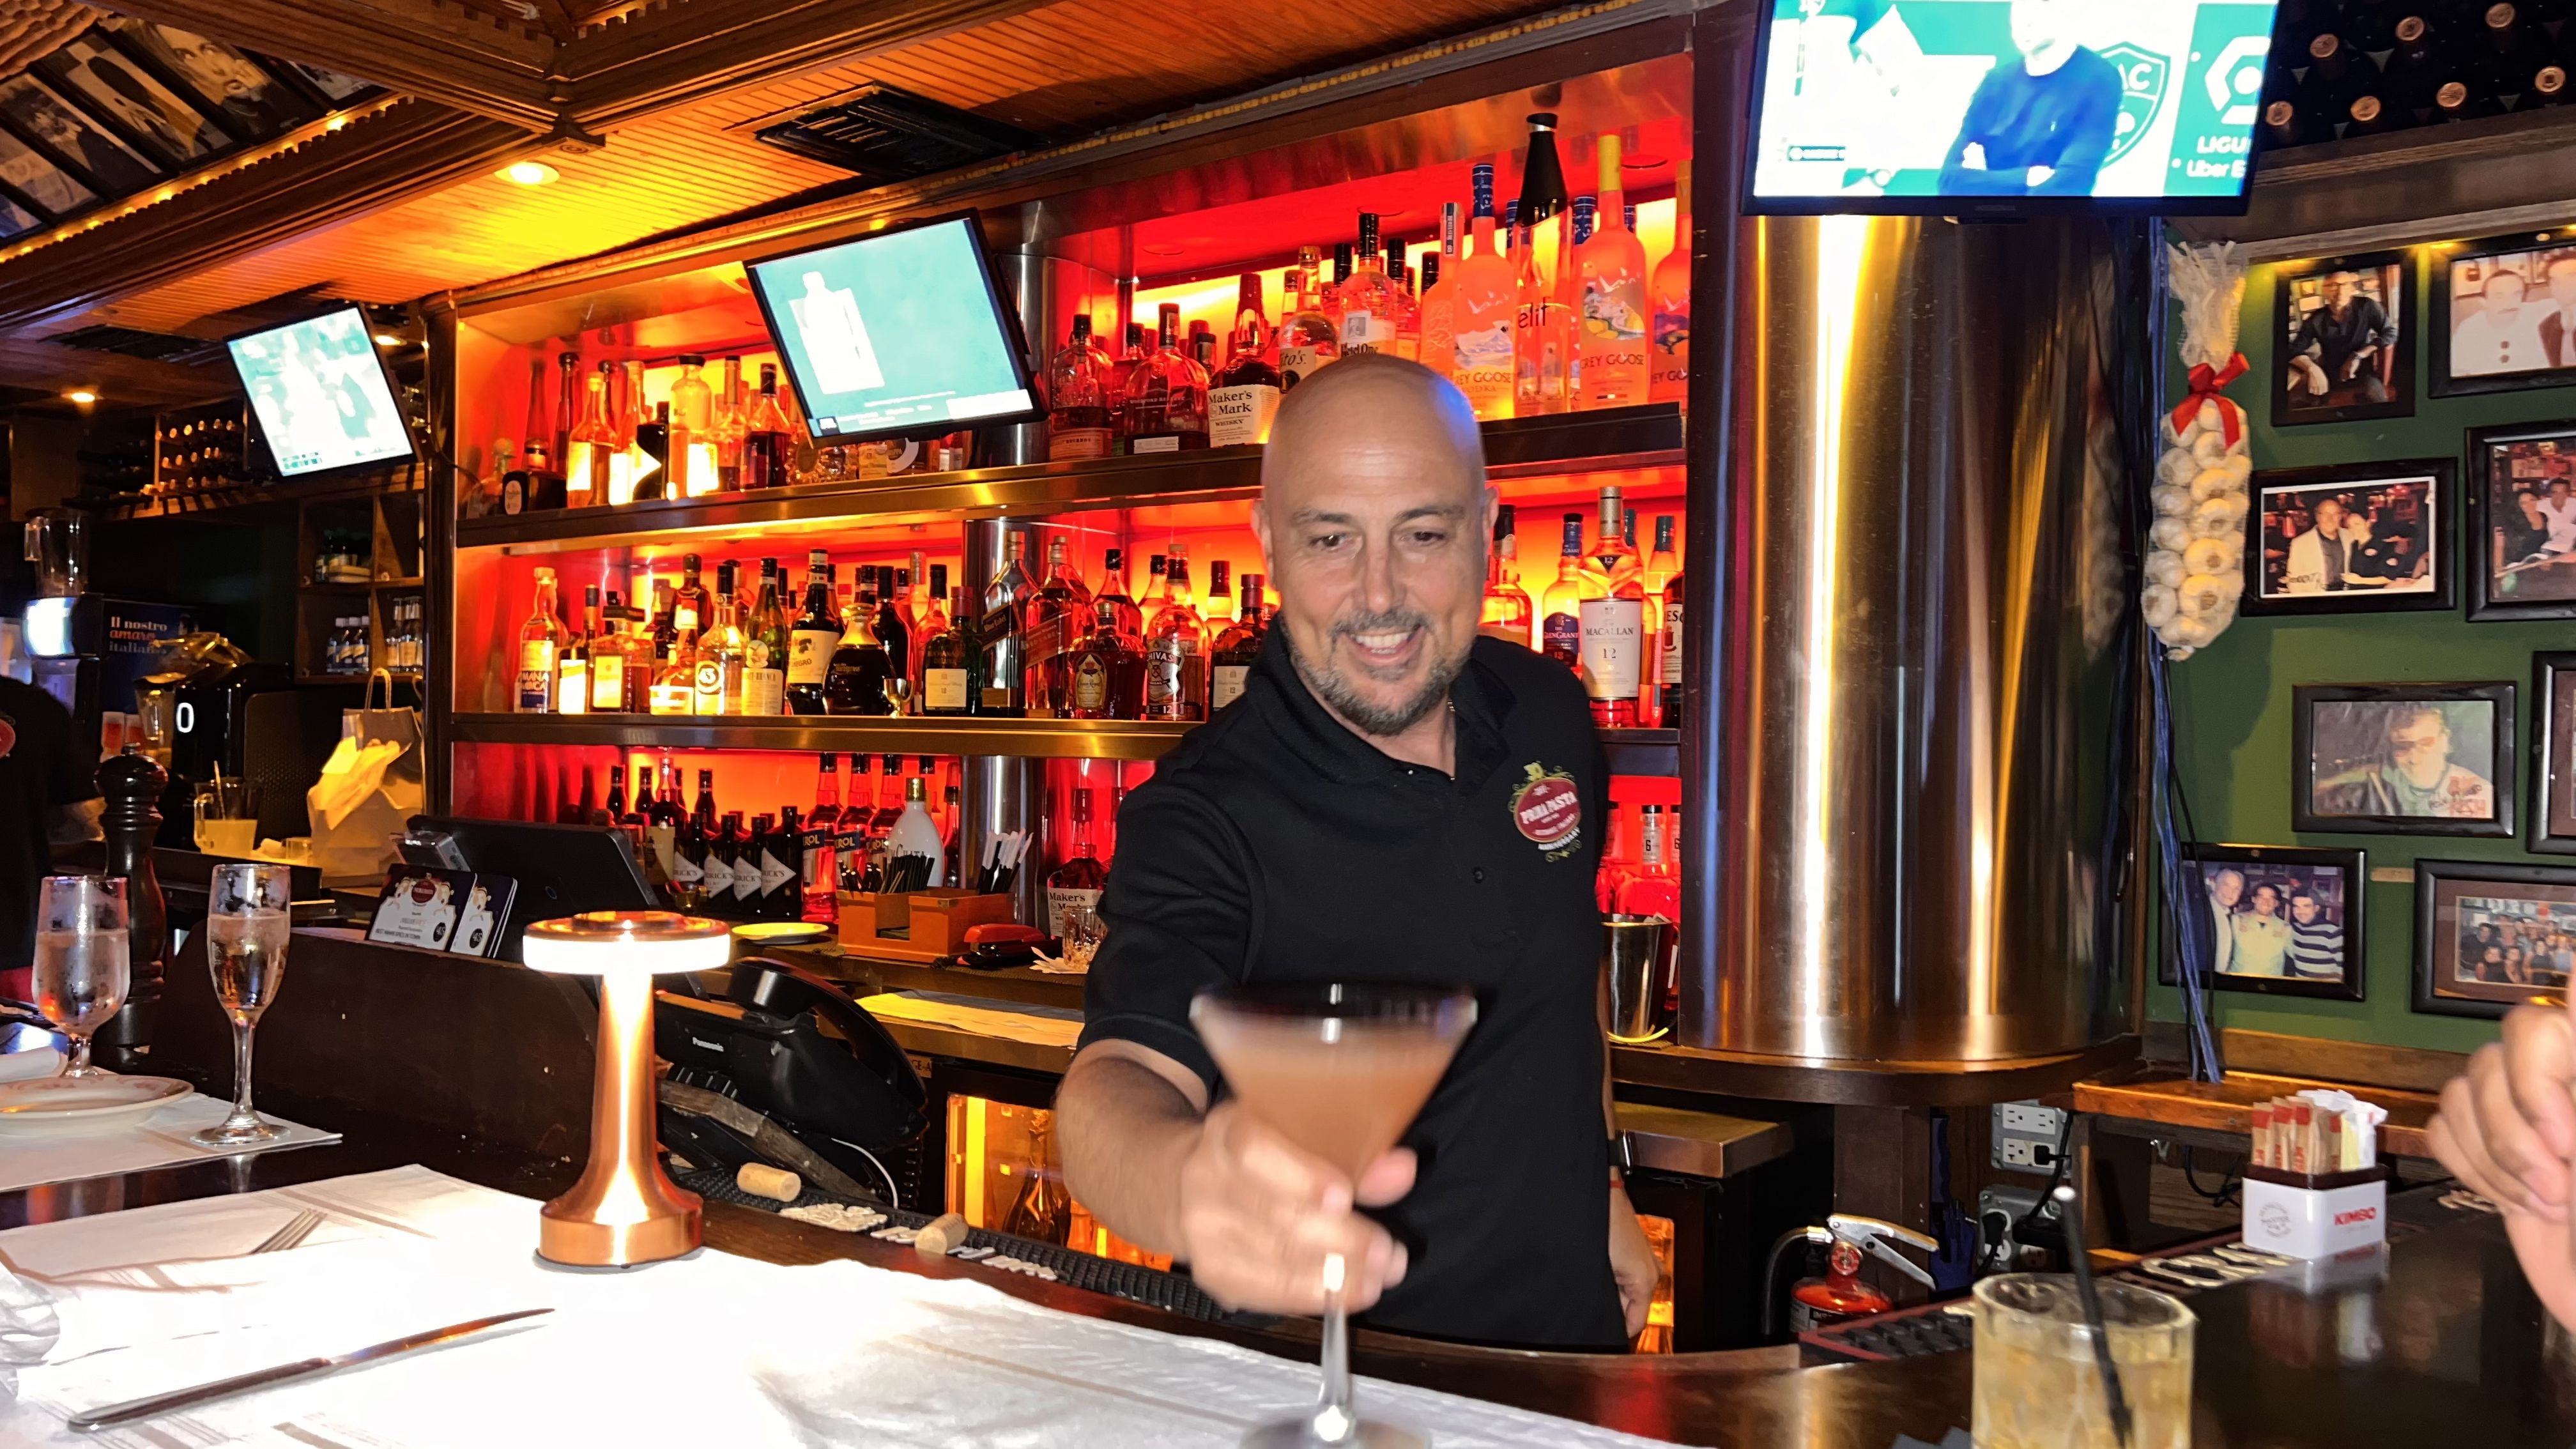 Con su carisma y energía, Henry lleva más de 20 años como el bartender estrella de Prima Pasta, preparando tragos y cautivando con su simpatía a los comensales. (Foto: Opy Morales)